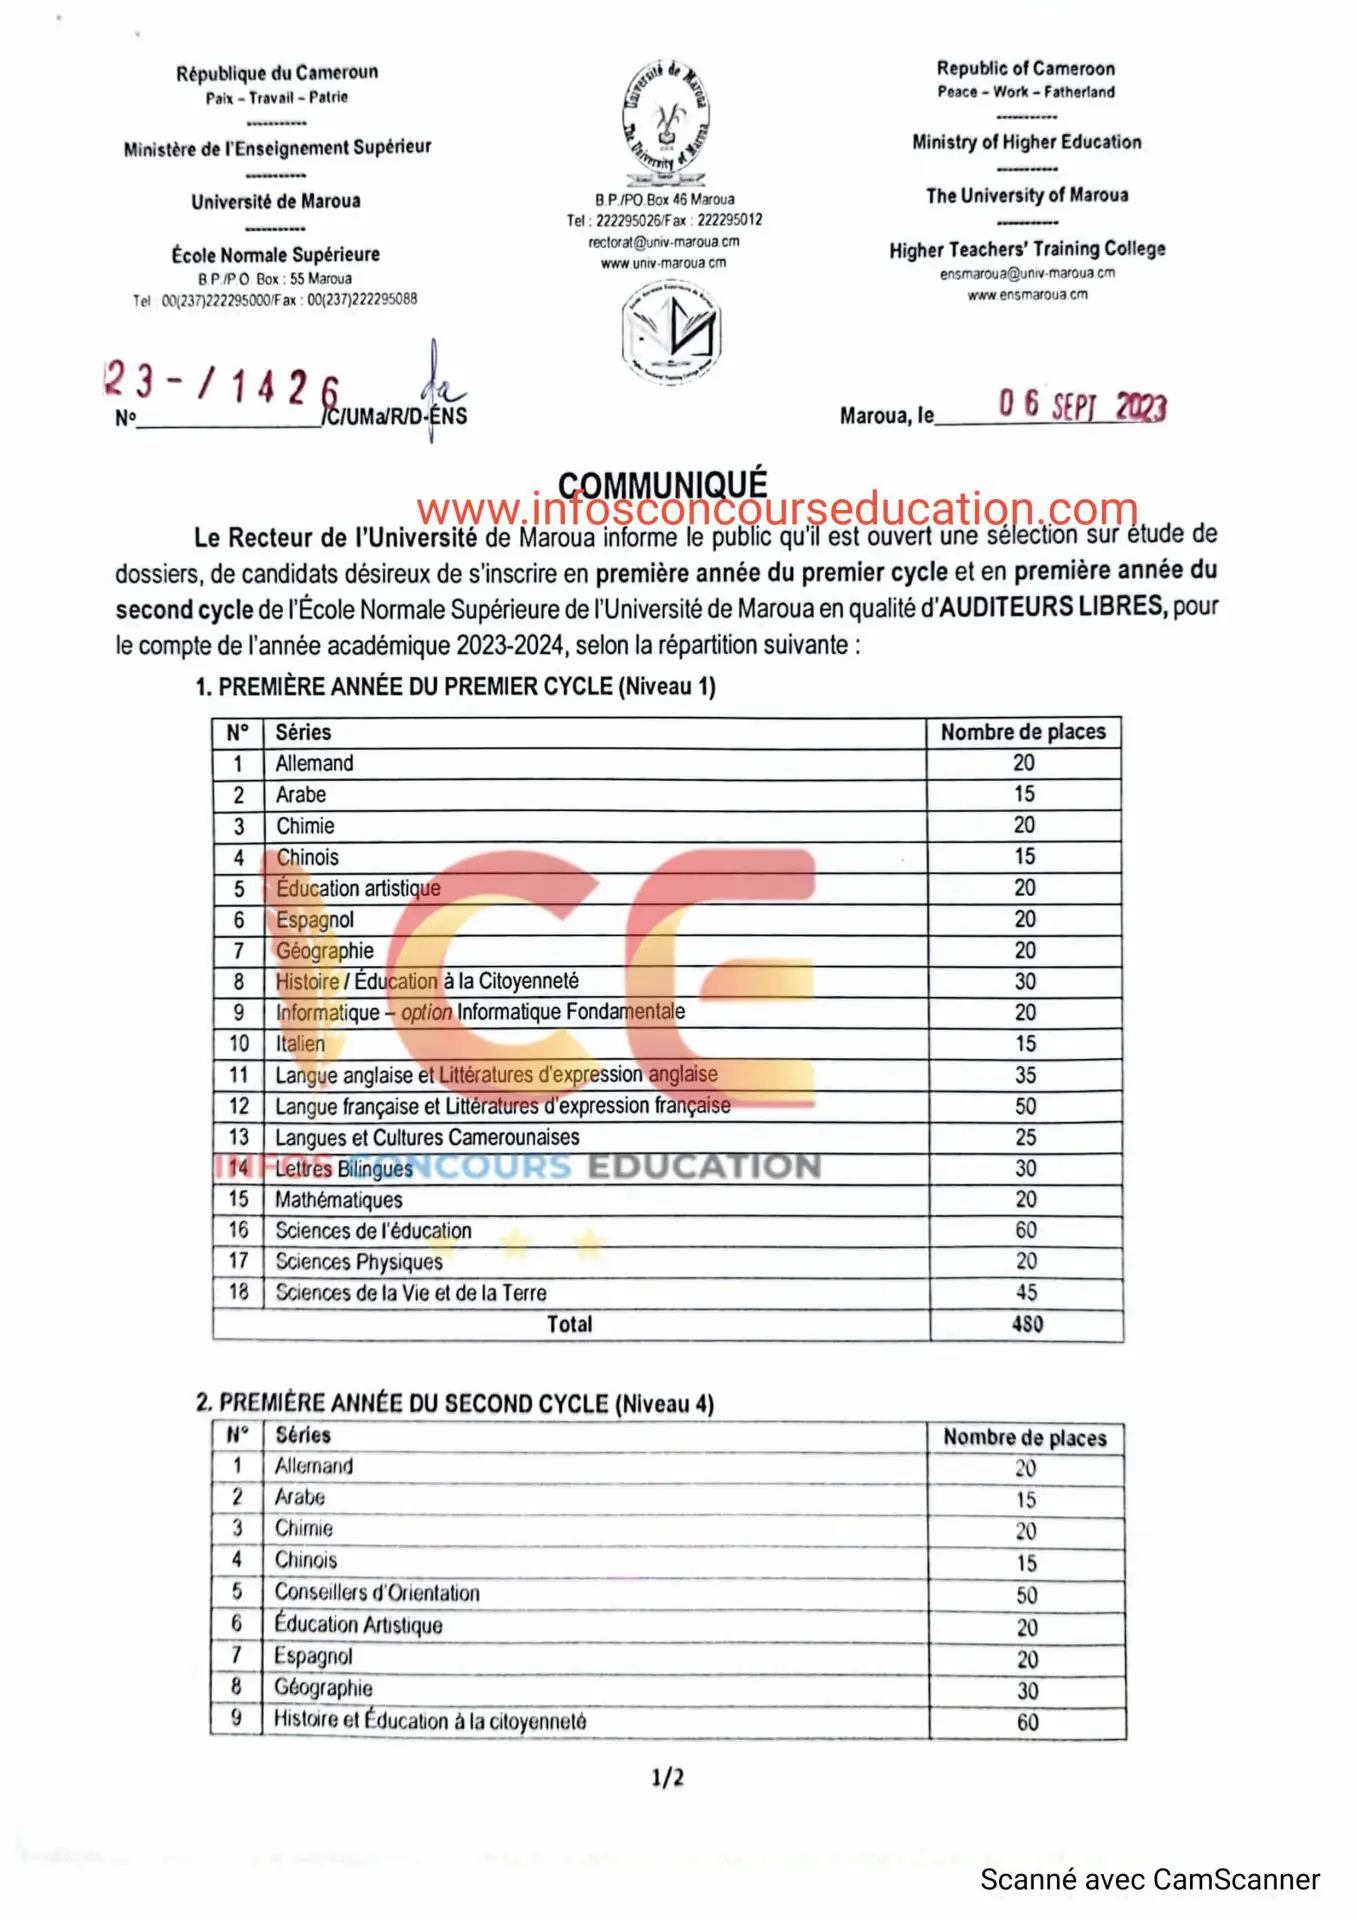 Concours sur étude de dossiers de l'ENS de l'Université de Maroua en qualité d'AUDITEURS LIBRES, année académique 2023-2024.